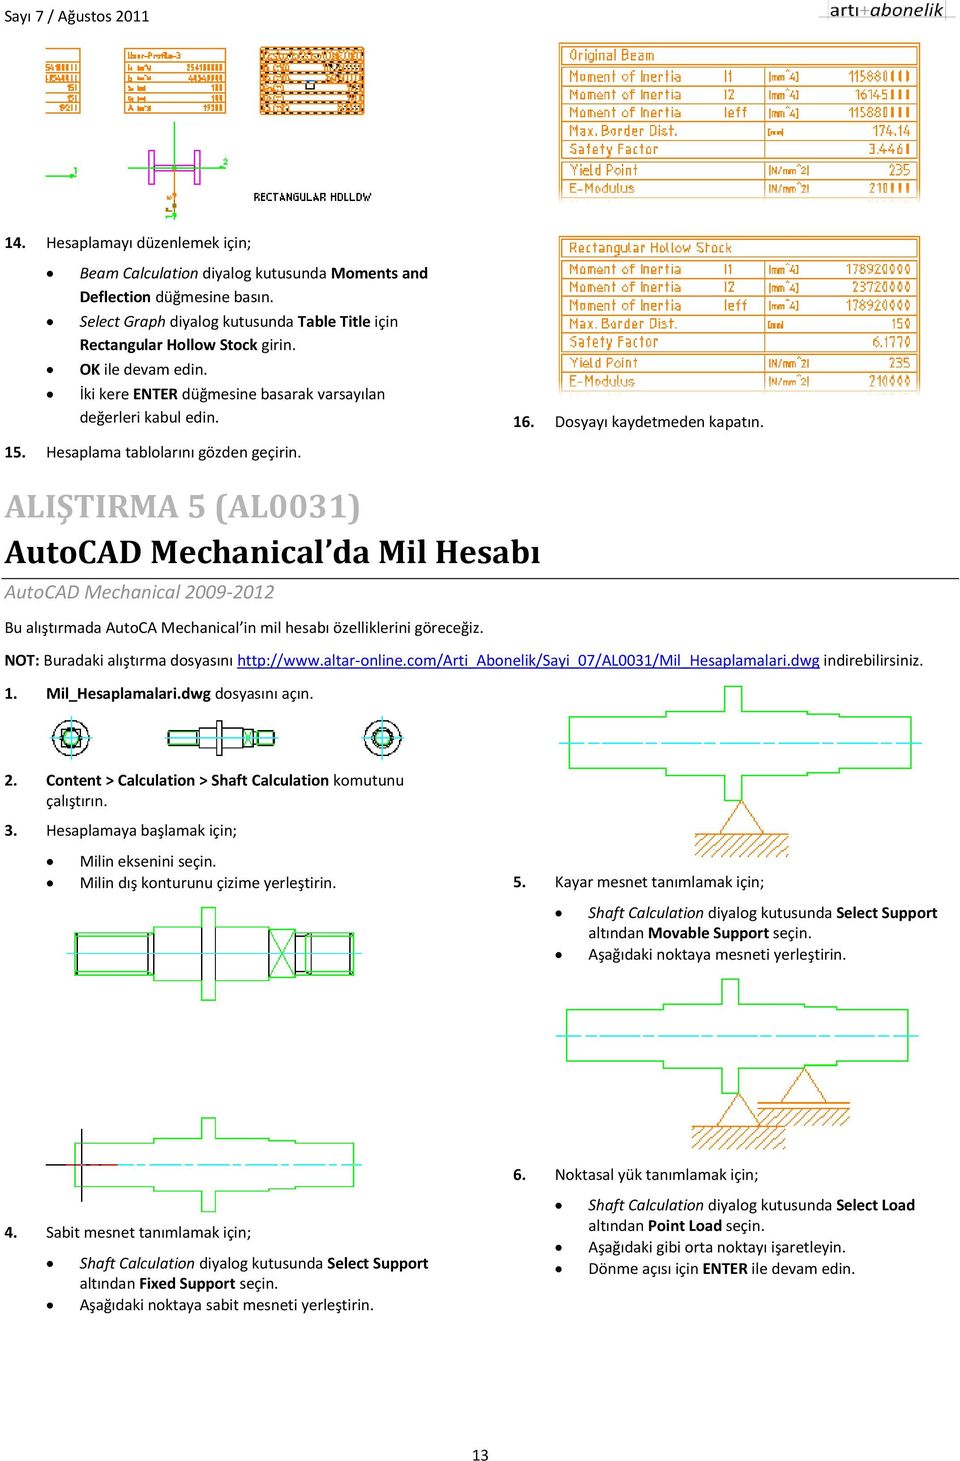 ALIŞTIRMA 5 (AL0031) AutoCAD Mechanical da Mil Hesabı AutoCAD Mechanical 2009-2012 Bu alıştırmada AutoCA Mechanical in mil hesabı özelliklerini göreceğiz. NOT: Buradaki alıştırma dosyasını http://www.